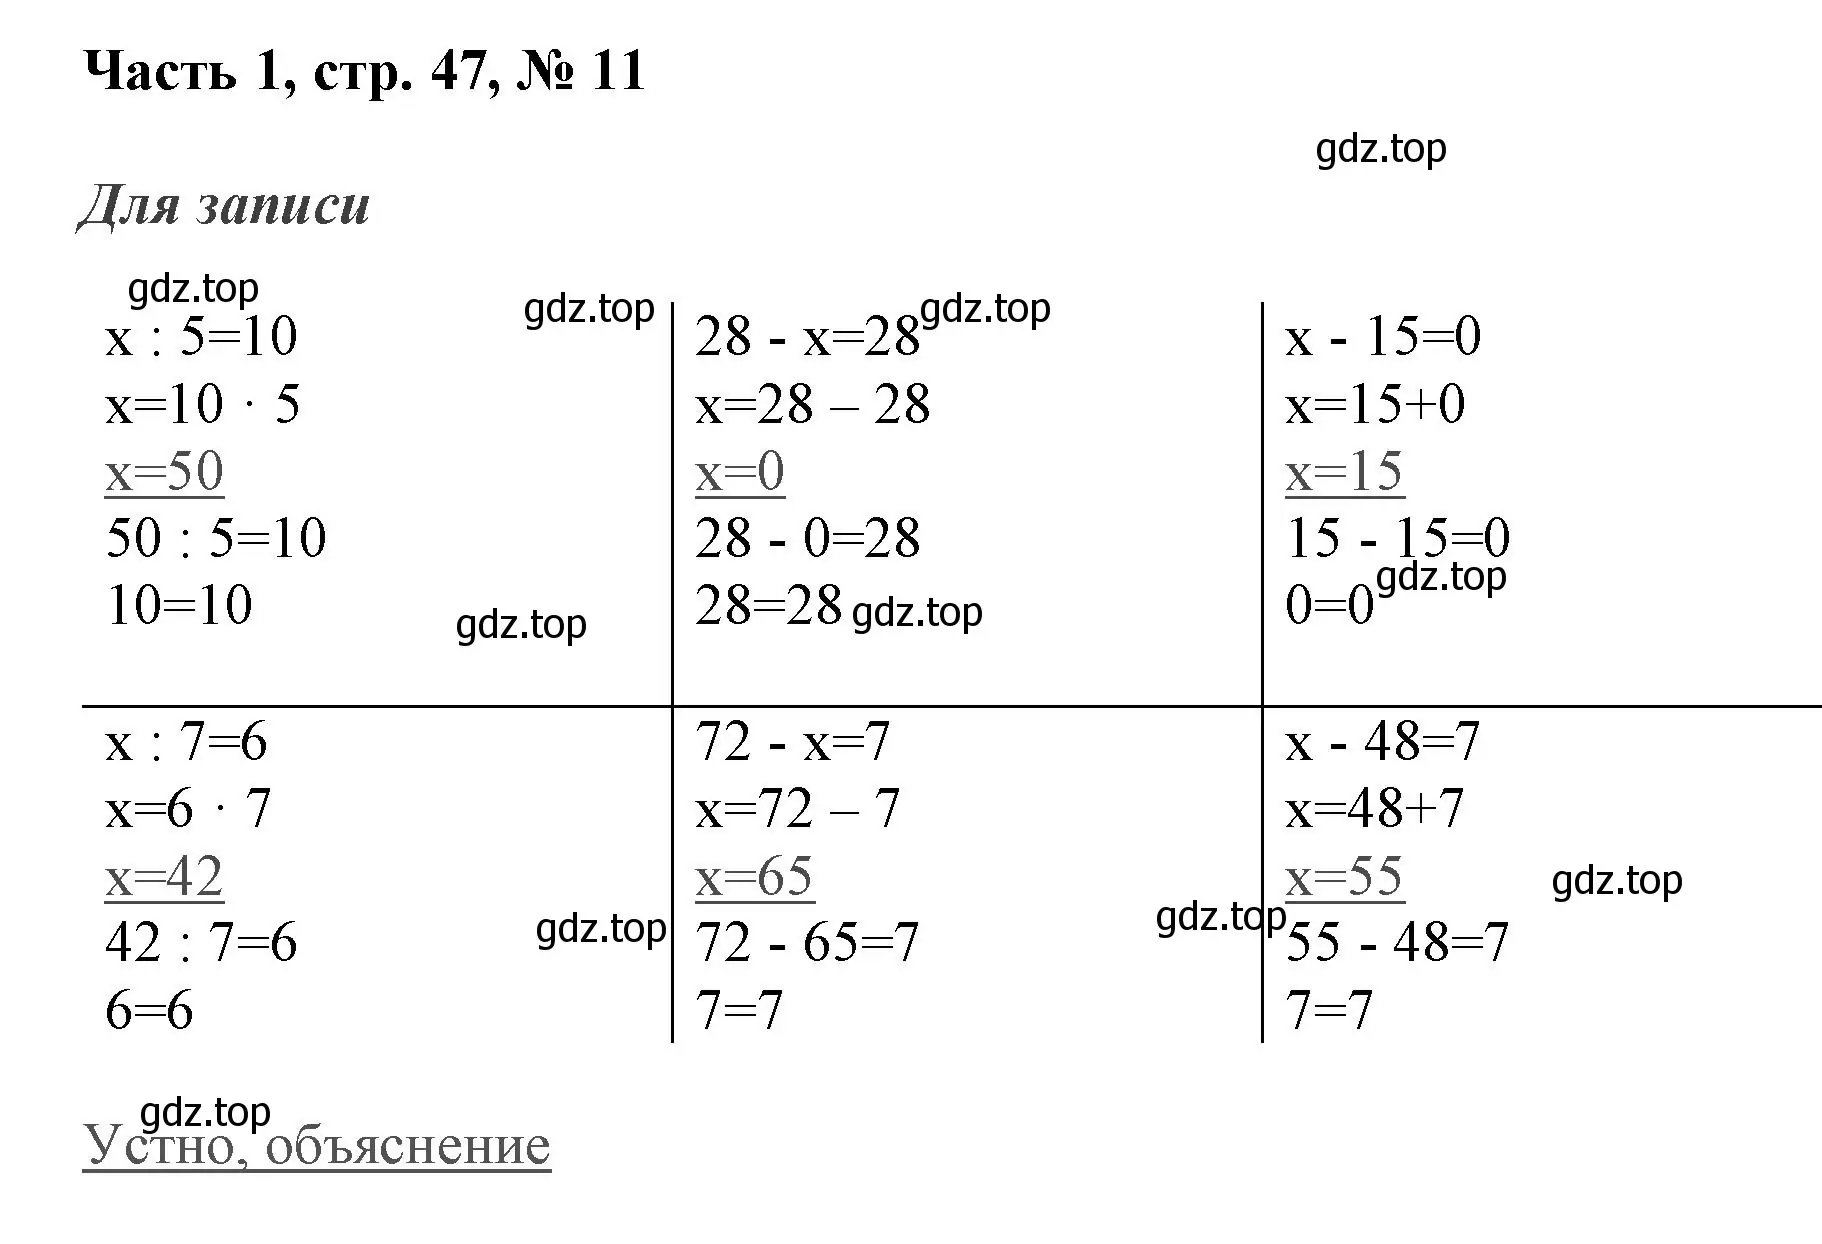 Решение номер 11 (страница 47) гдз по математике 3 класс Моро, Бантова, учебник 1 часть